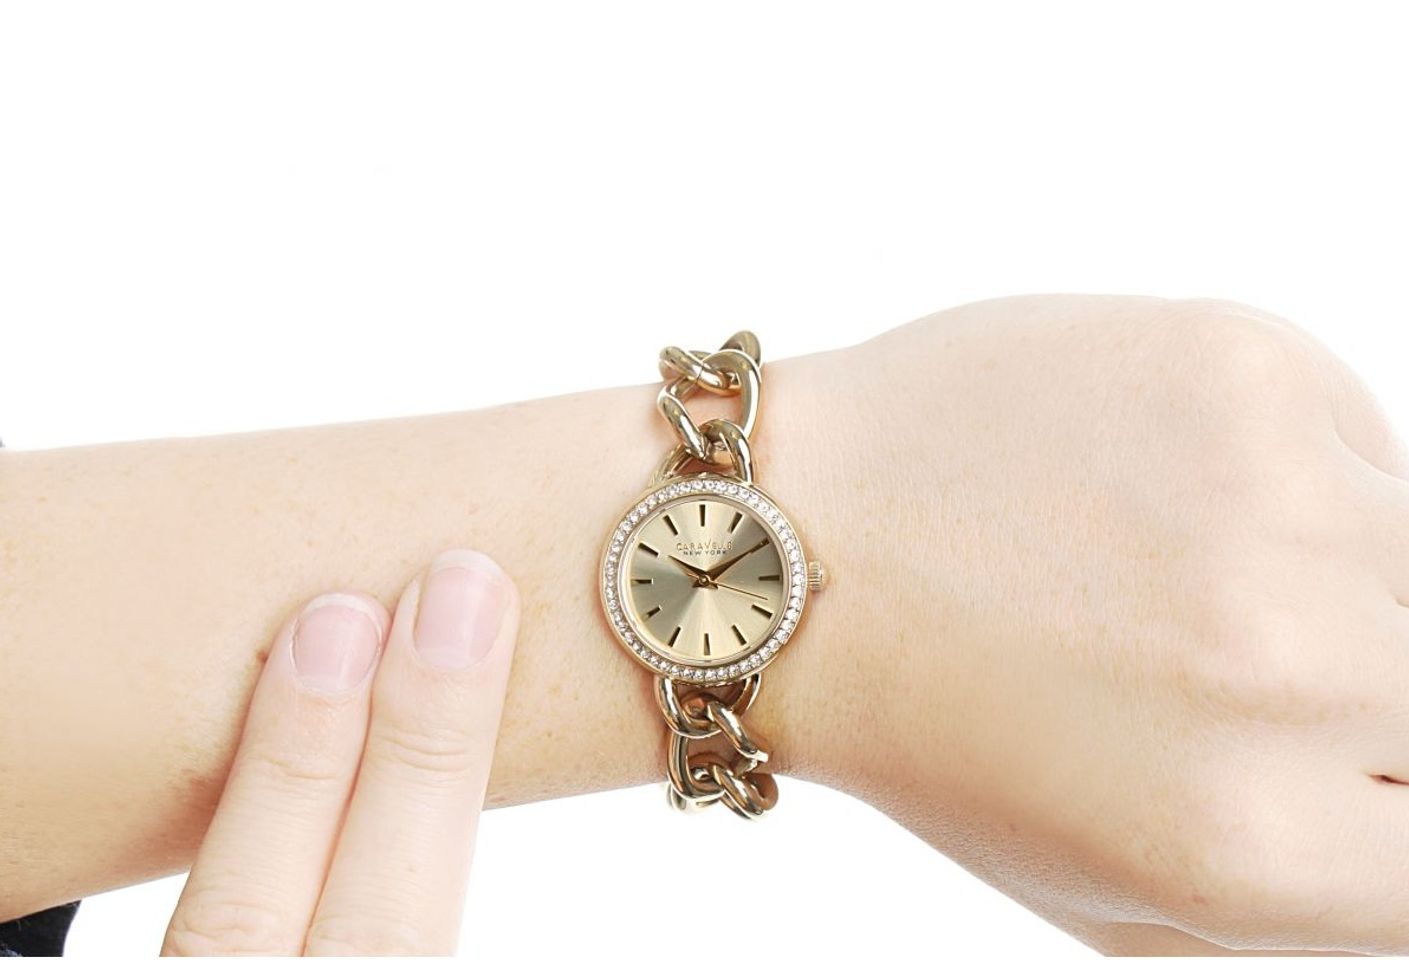 Chiếc đồng hồ Caravelle New York nữ 44L152 như một chiếc lắc tay xinh xắn, tinh xảo